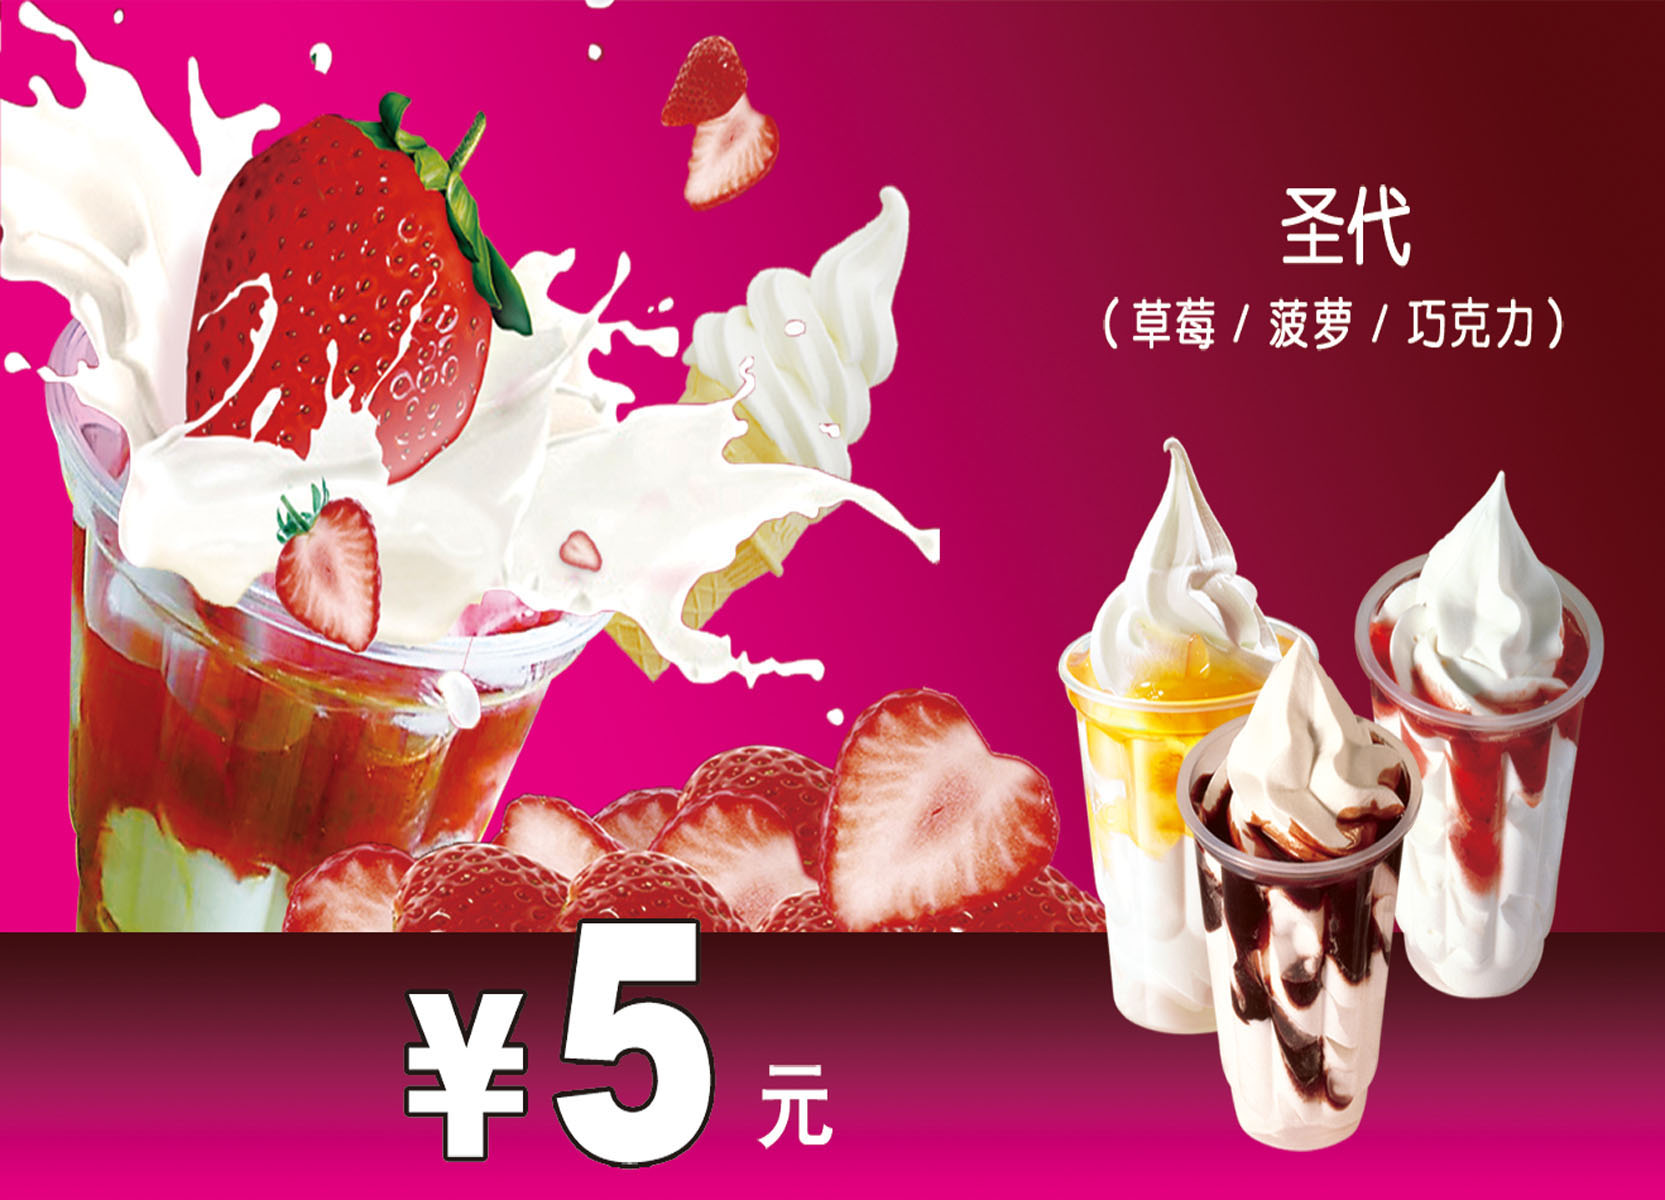 721版画海报展板喷绘贴纸图片198冰淇淋草莓菠萝巧克力价格宣传图